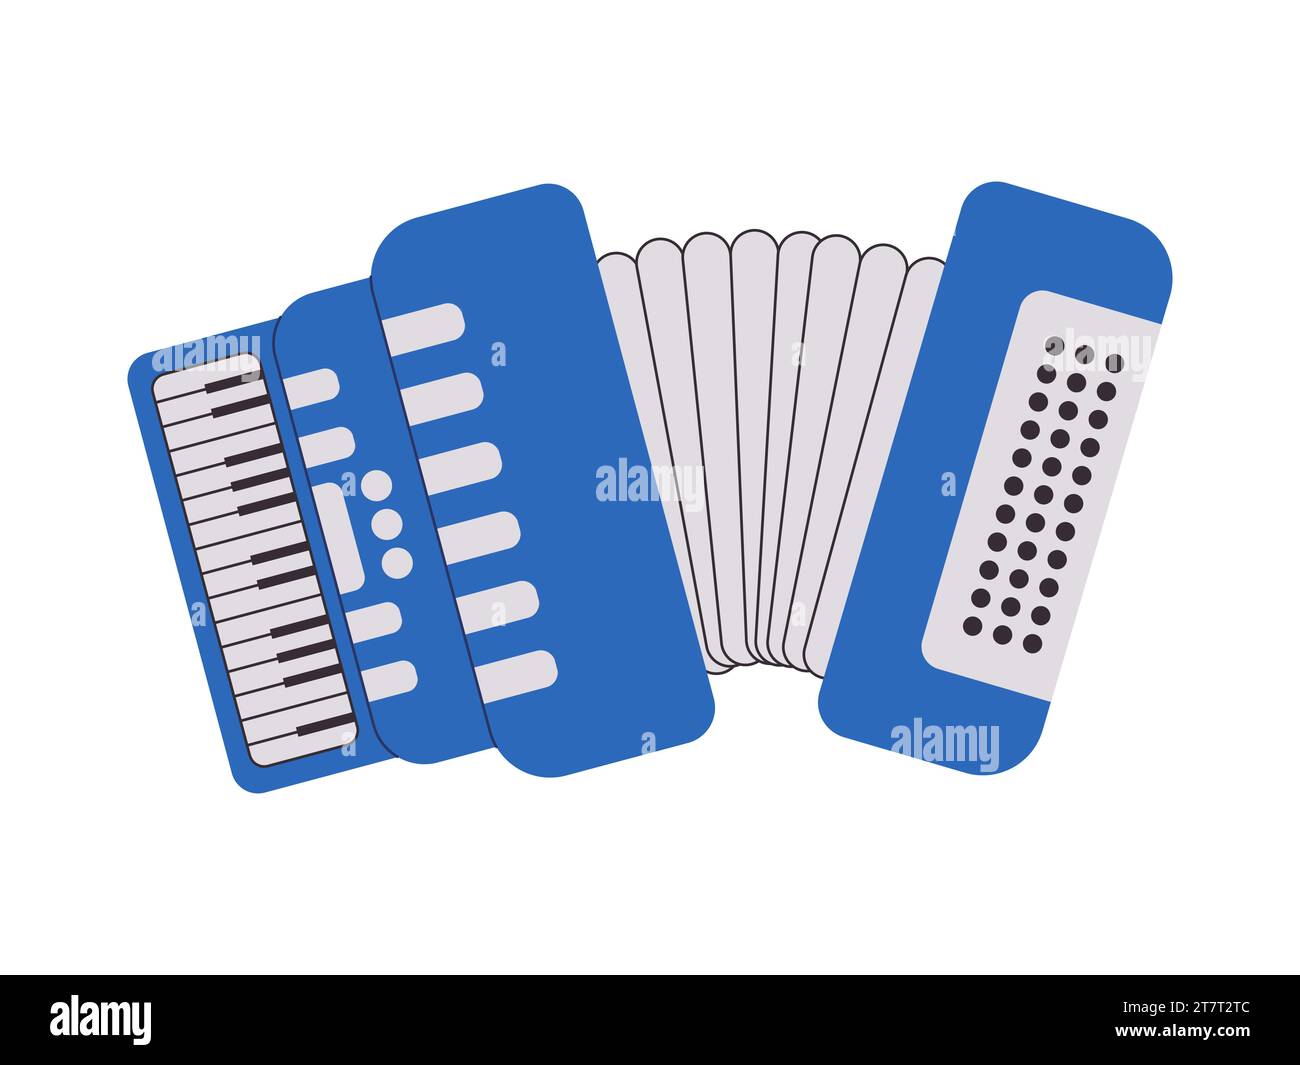 couleur bleue piano accordéon ancien équipement d'instrument de musique jouer son audio mélodie harmonica Illustration de Vecteur